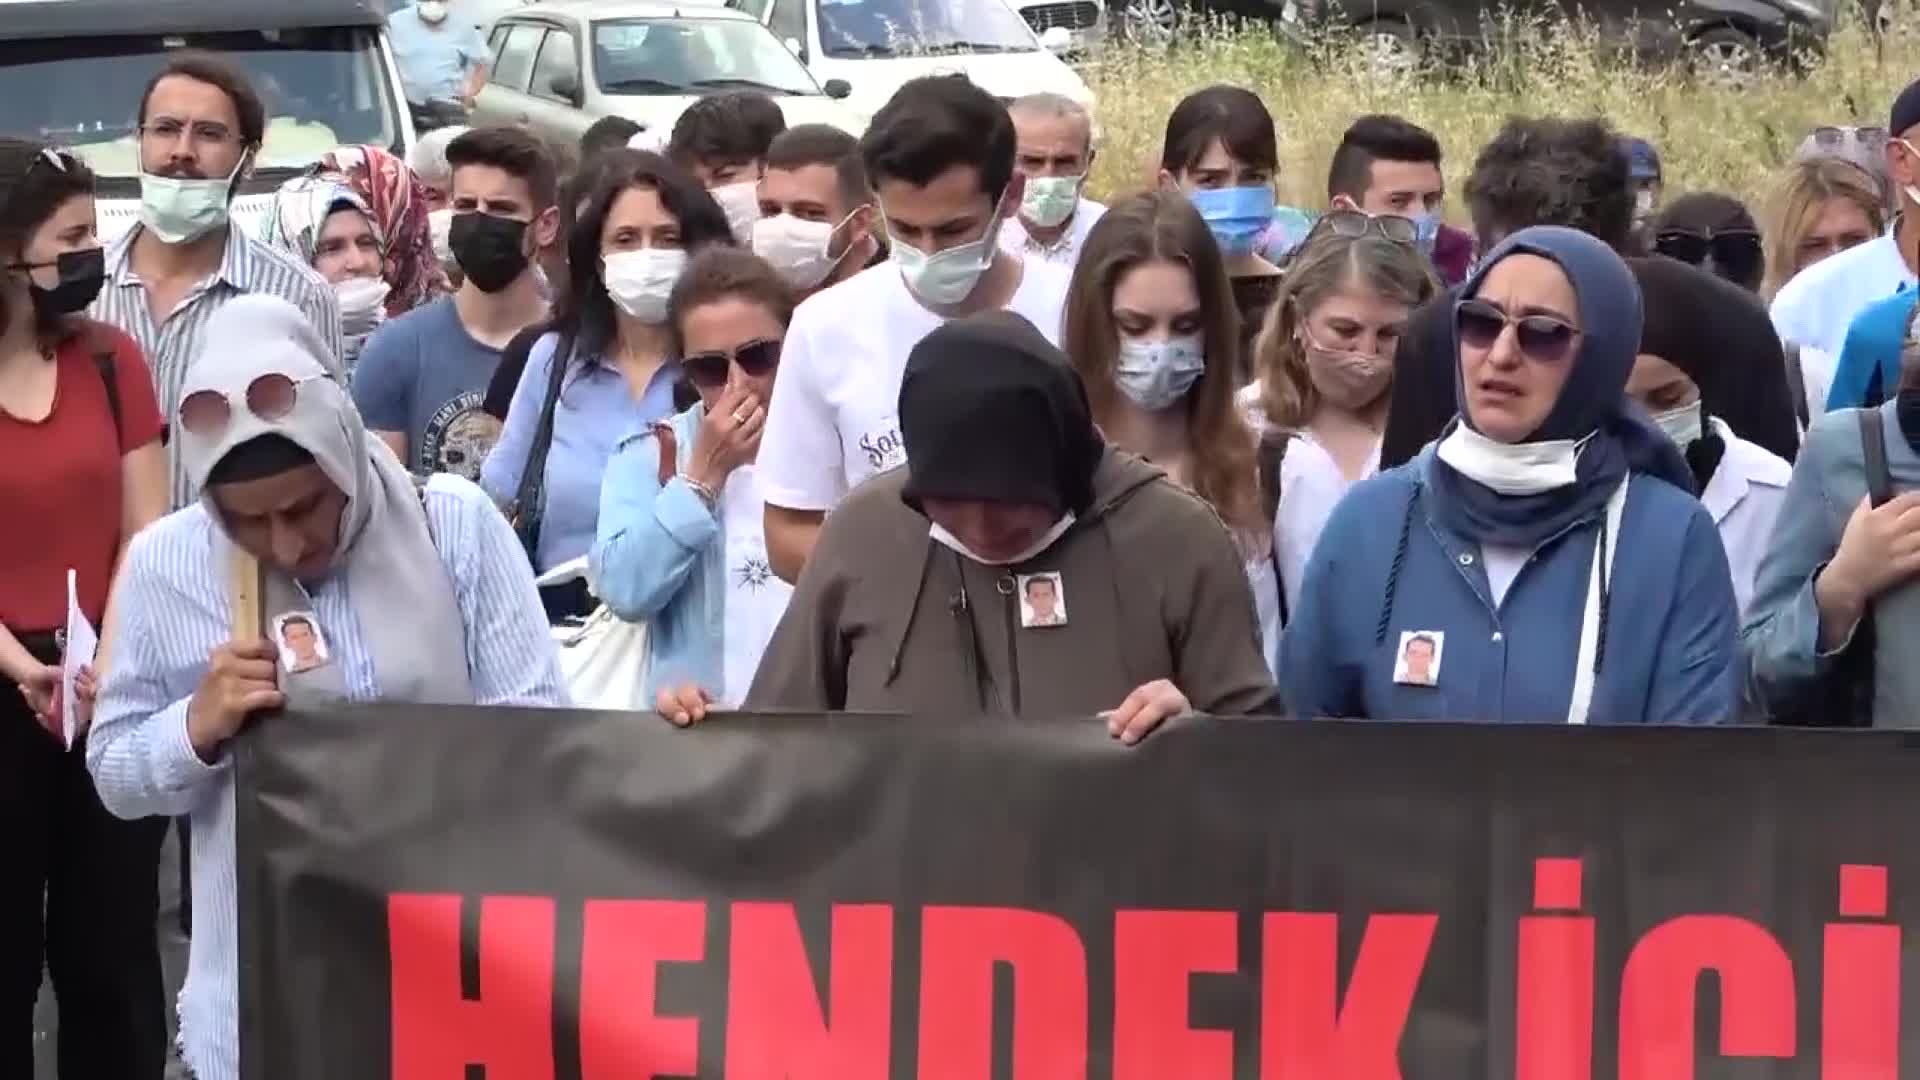 Hendek faciasının yıldönümü: "İşçilerin hayatını hiçe saydıklarını biliyoruz"